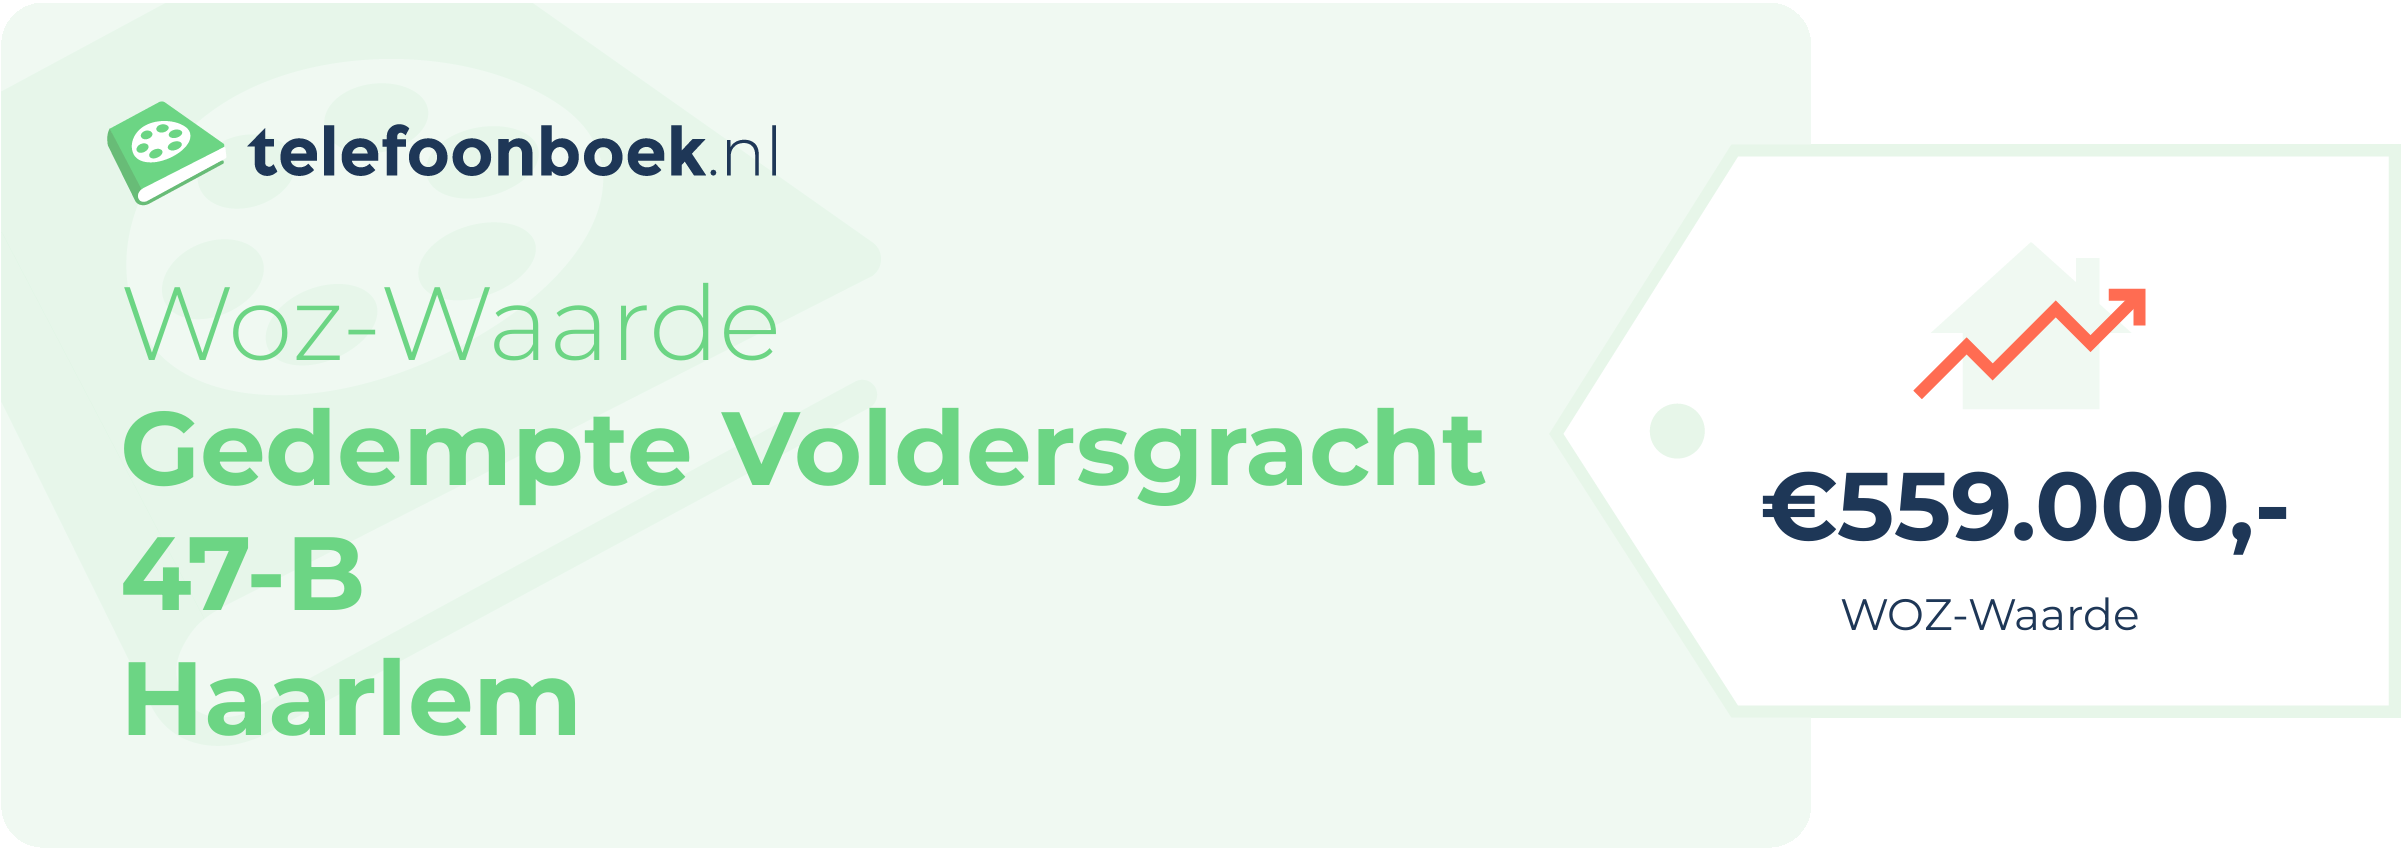 WOZ-waarde Gedempte Voldersgracht 47-B Haarlem